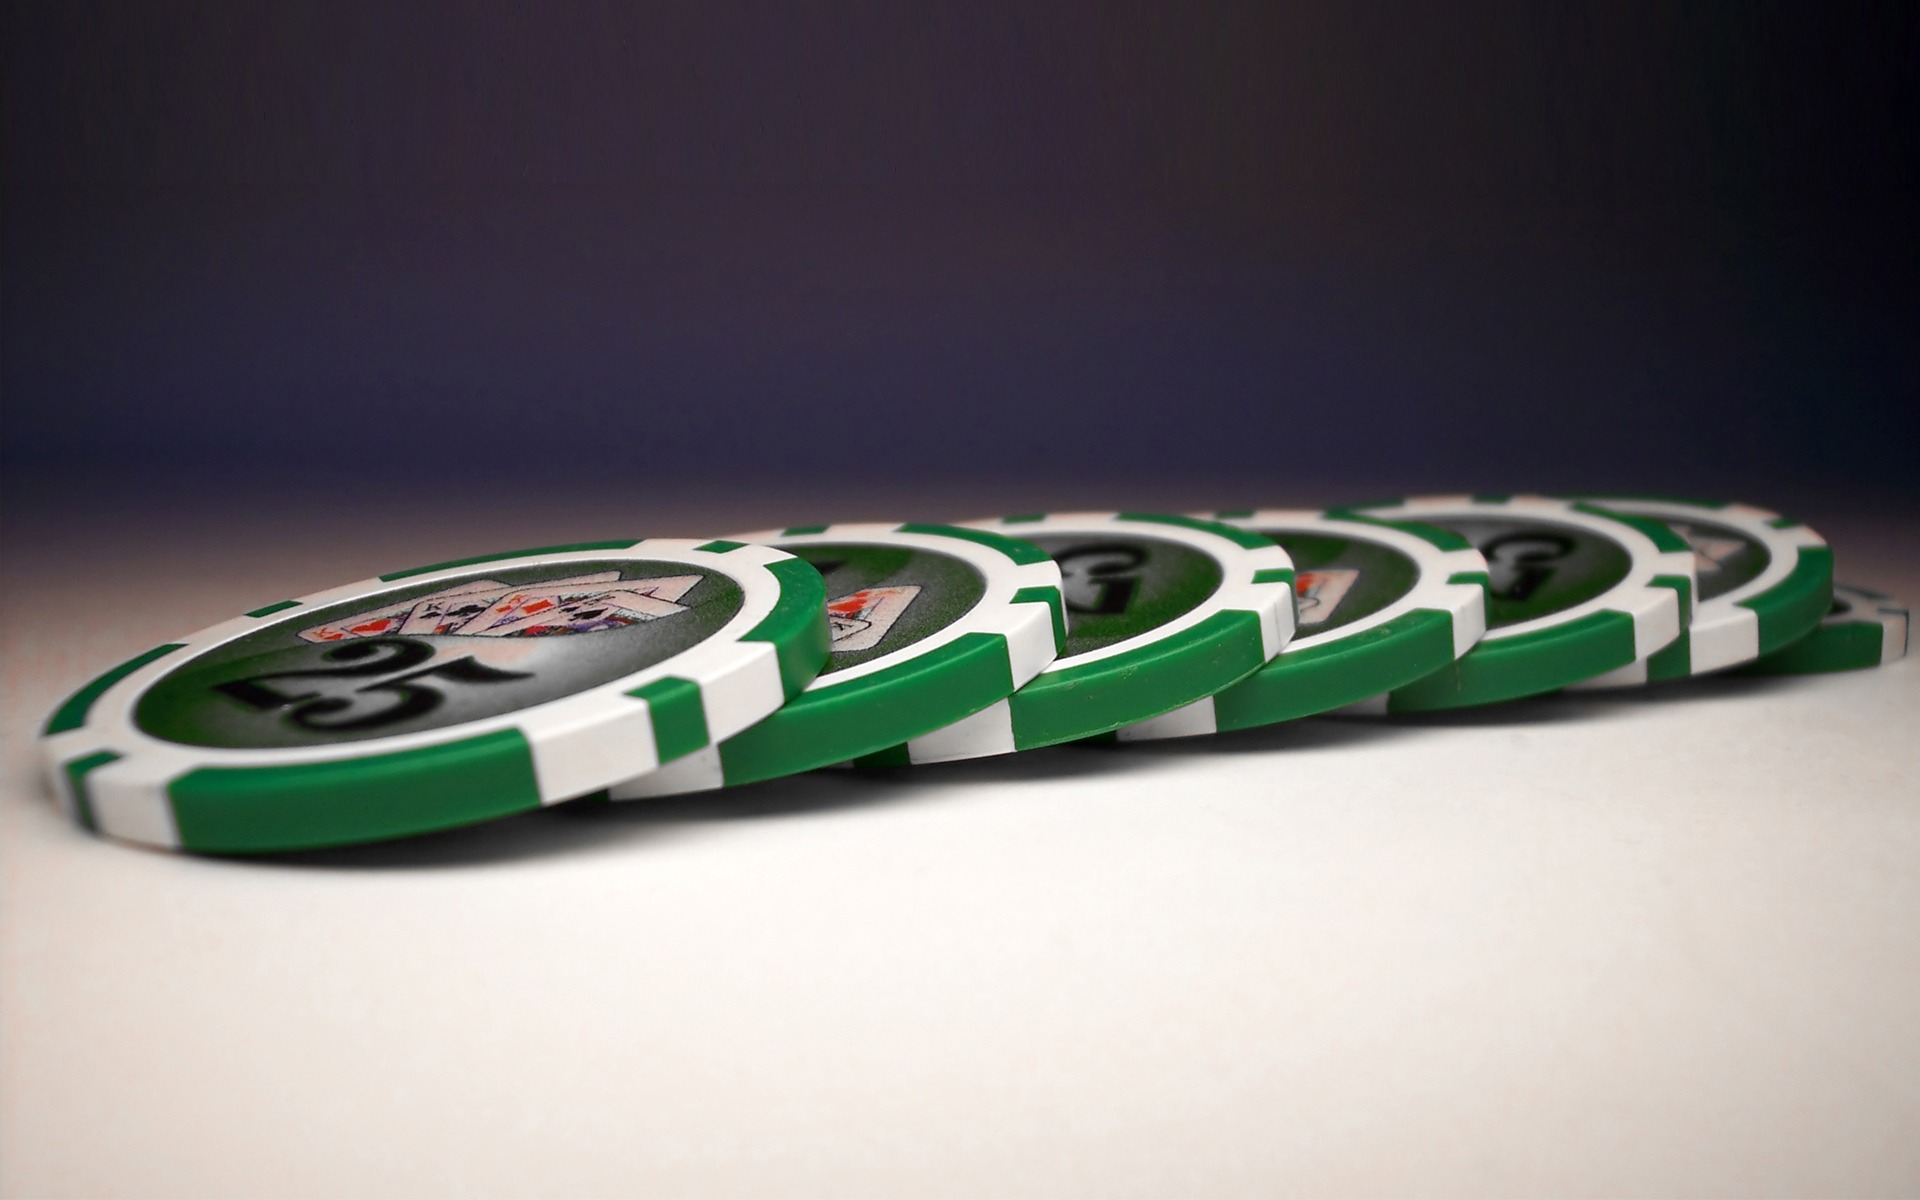 Green poker chips wallpaper. Green poker chips